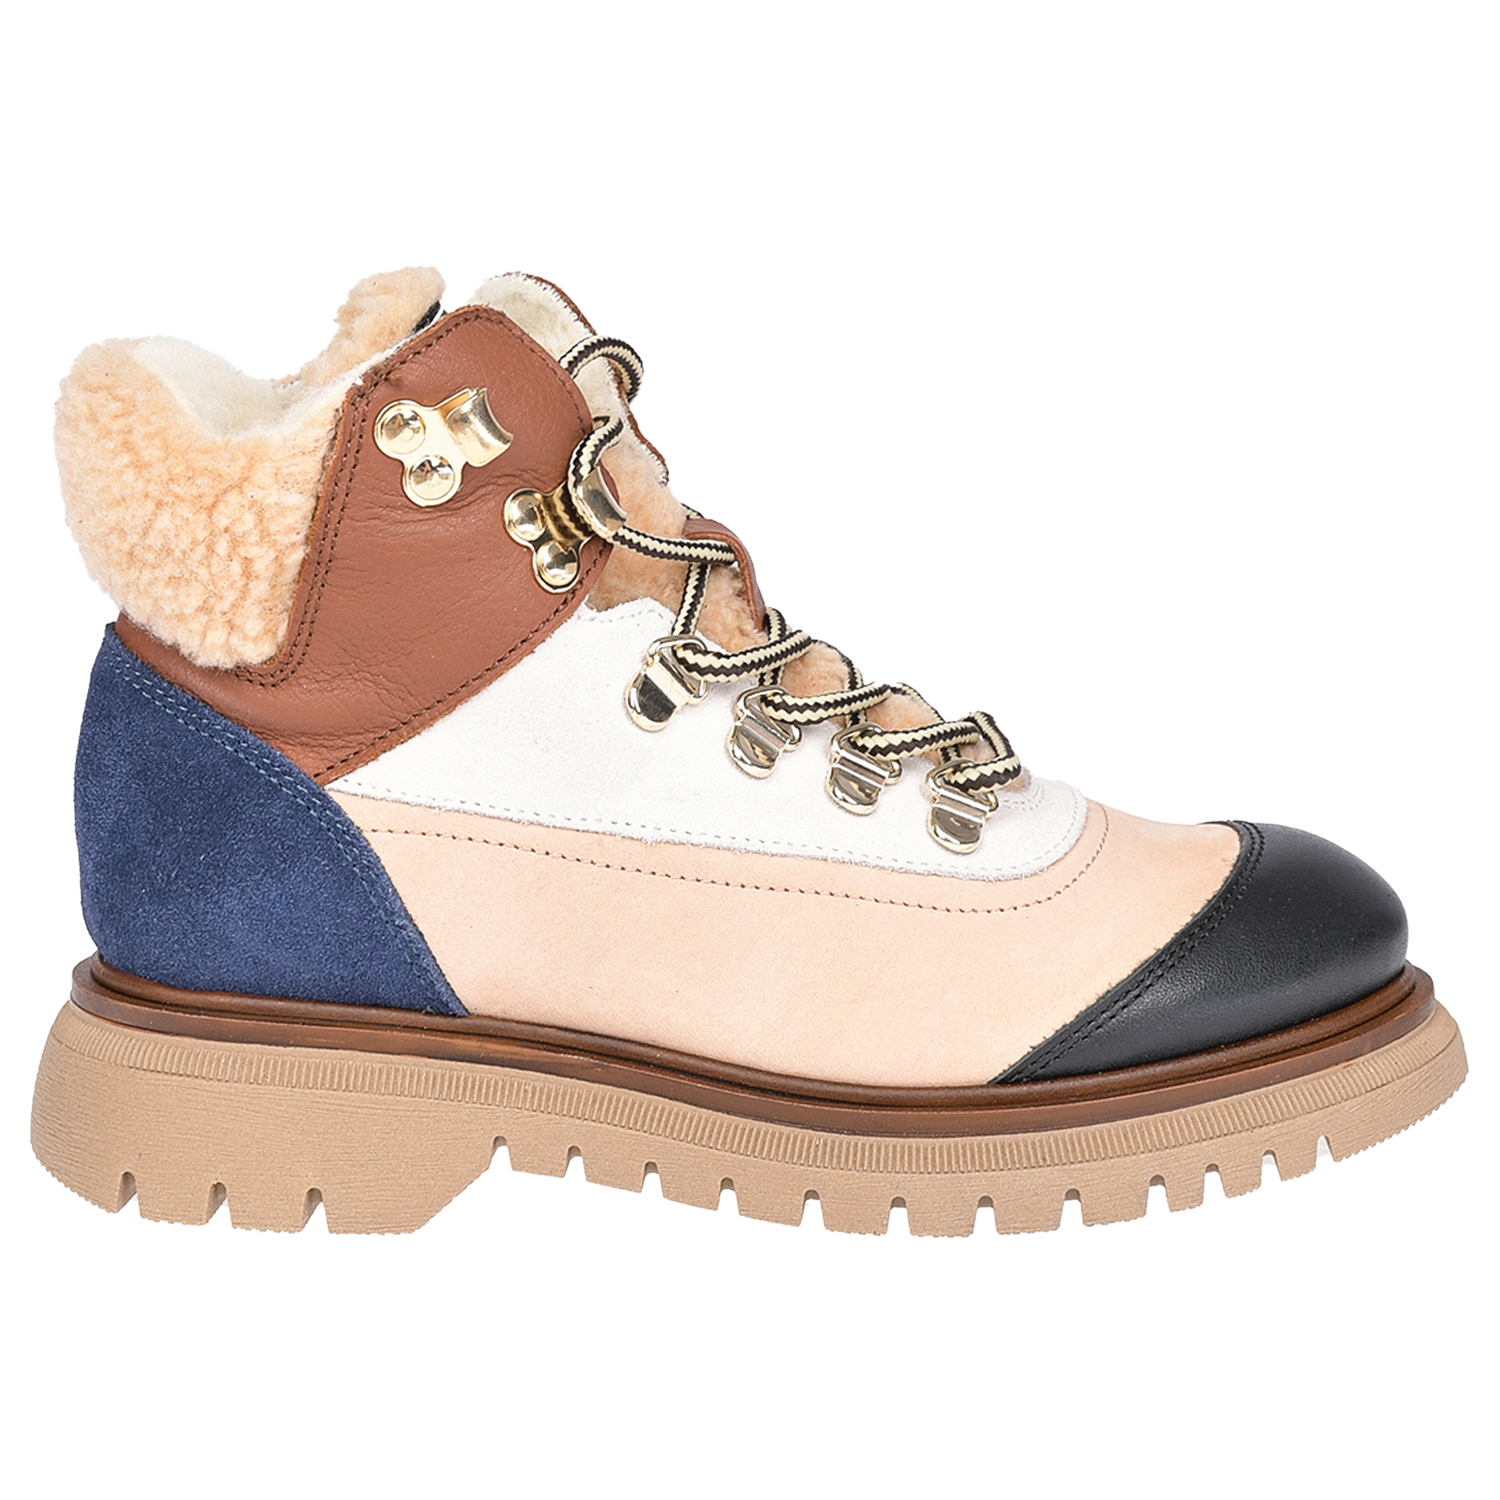 Кожаные ботинки в стиле колорблок Jarrett детские, размер 32, цвет бежевый - фото 2